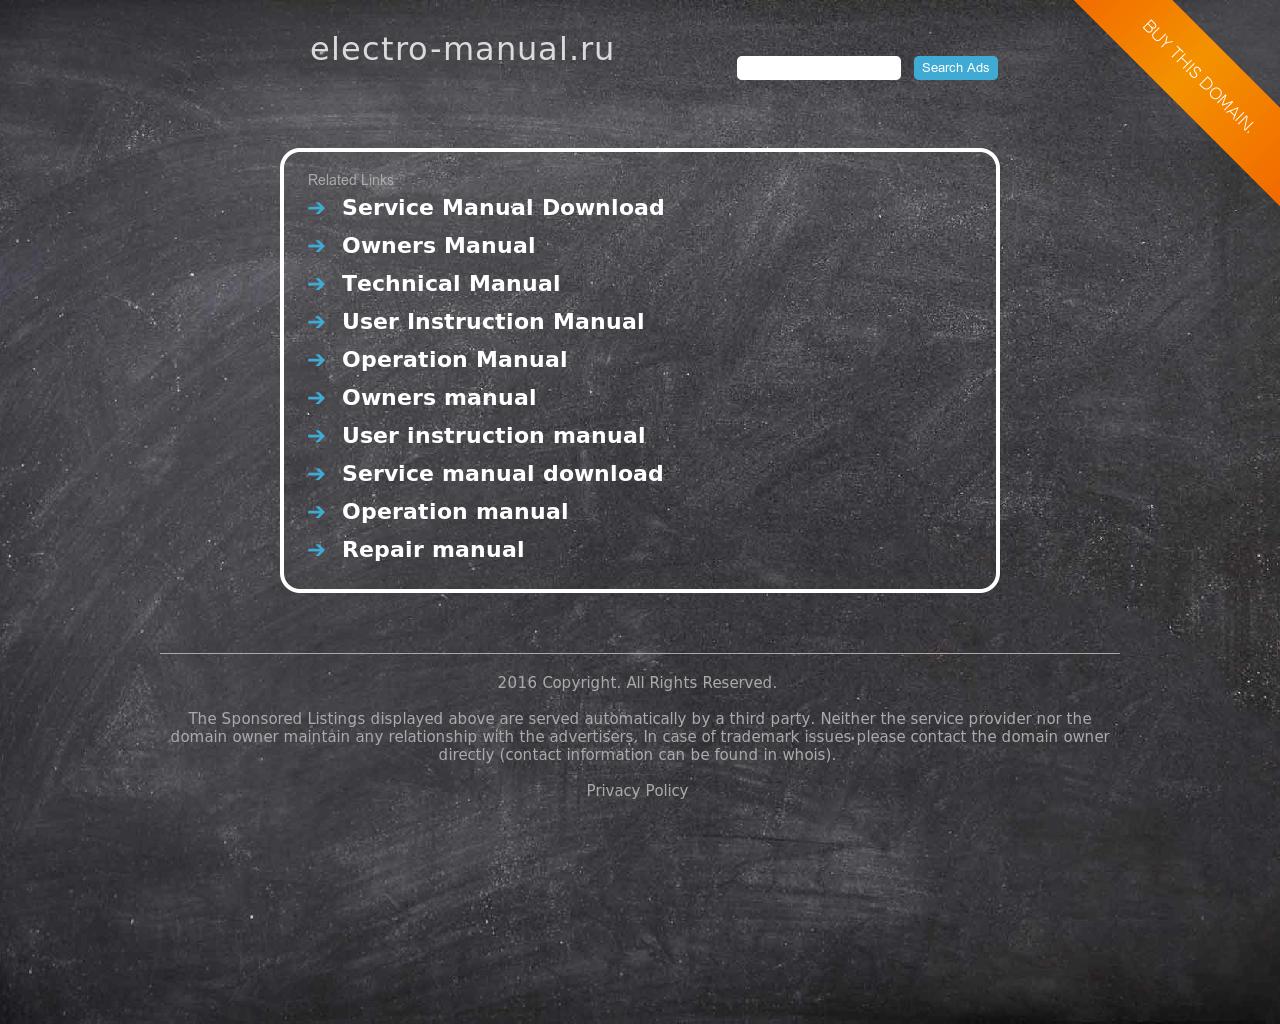 Изображение сайта electro-manual.ru в разрешении 1280x1024